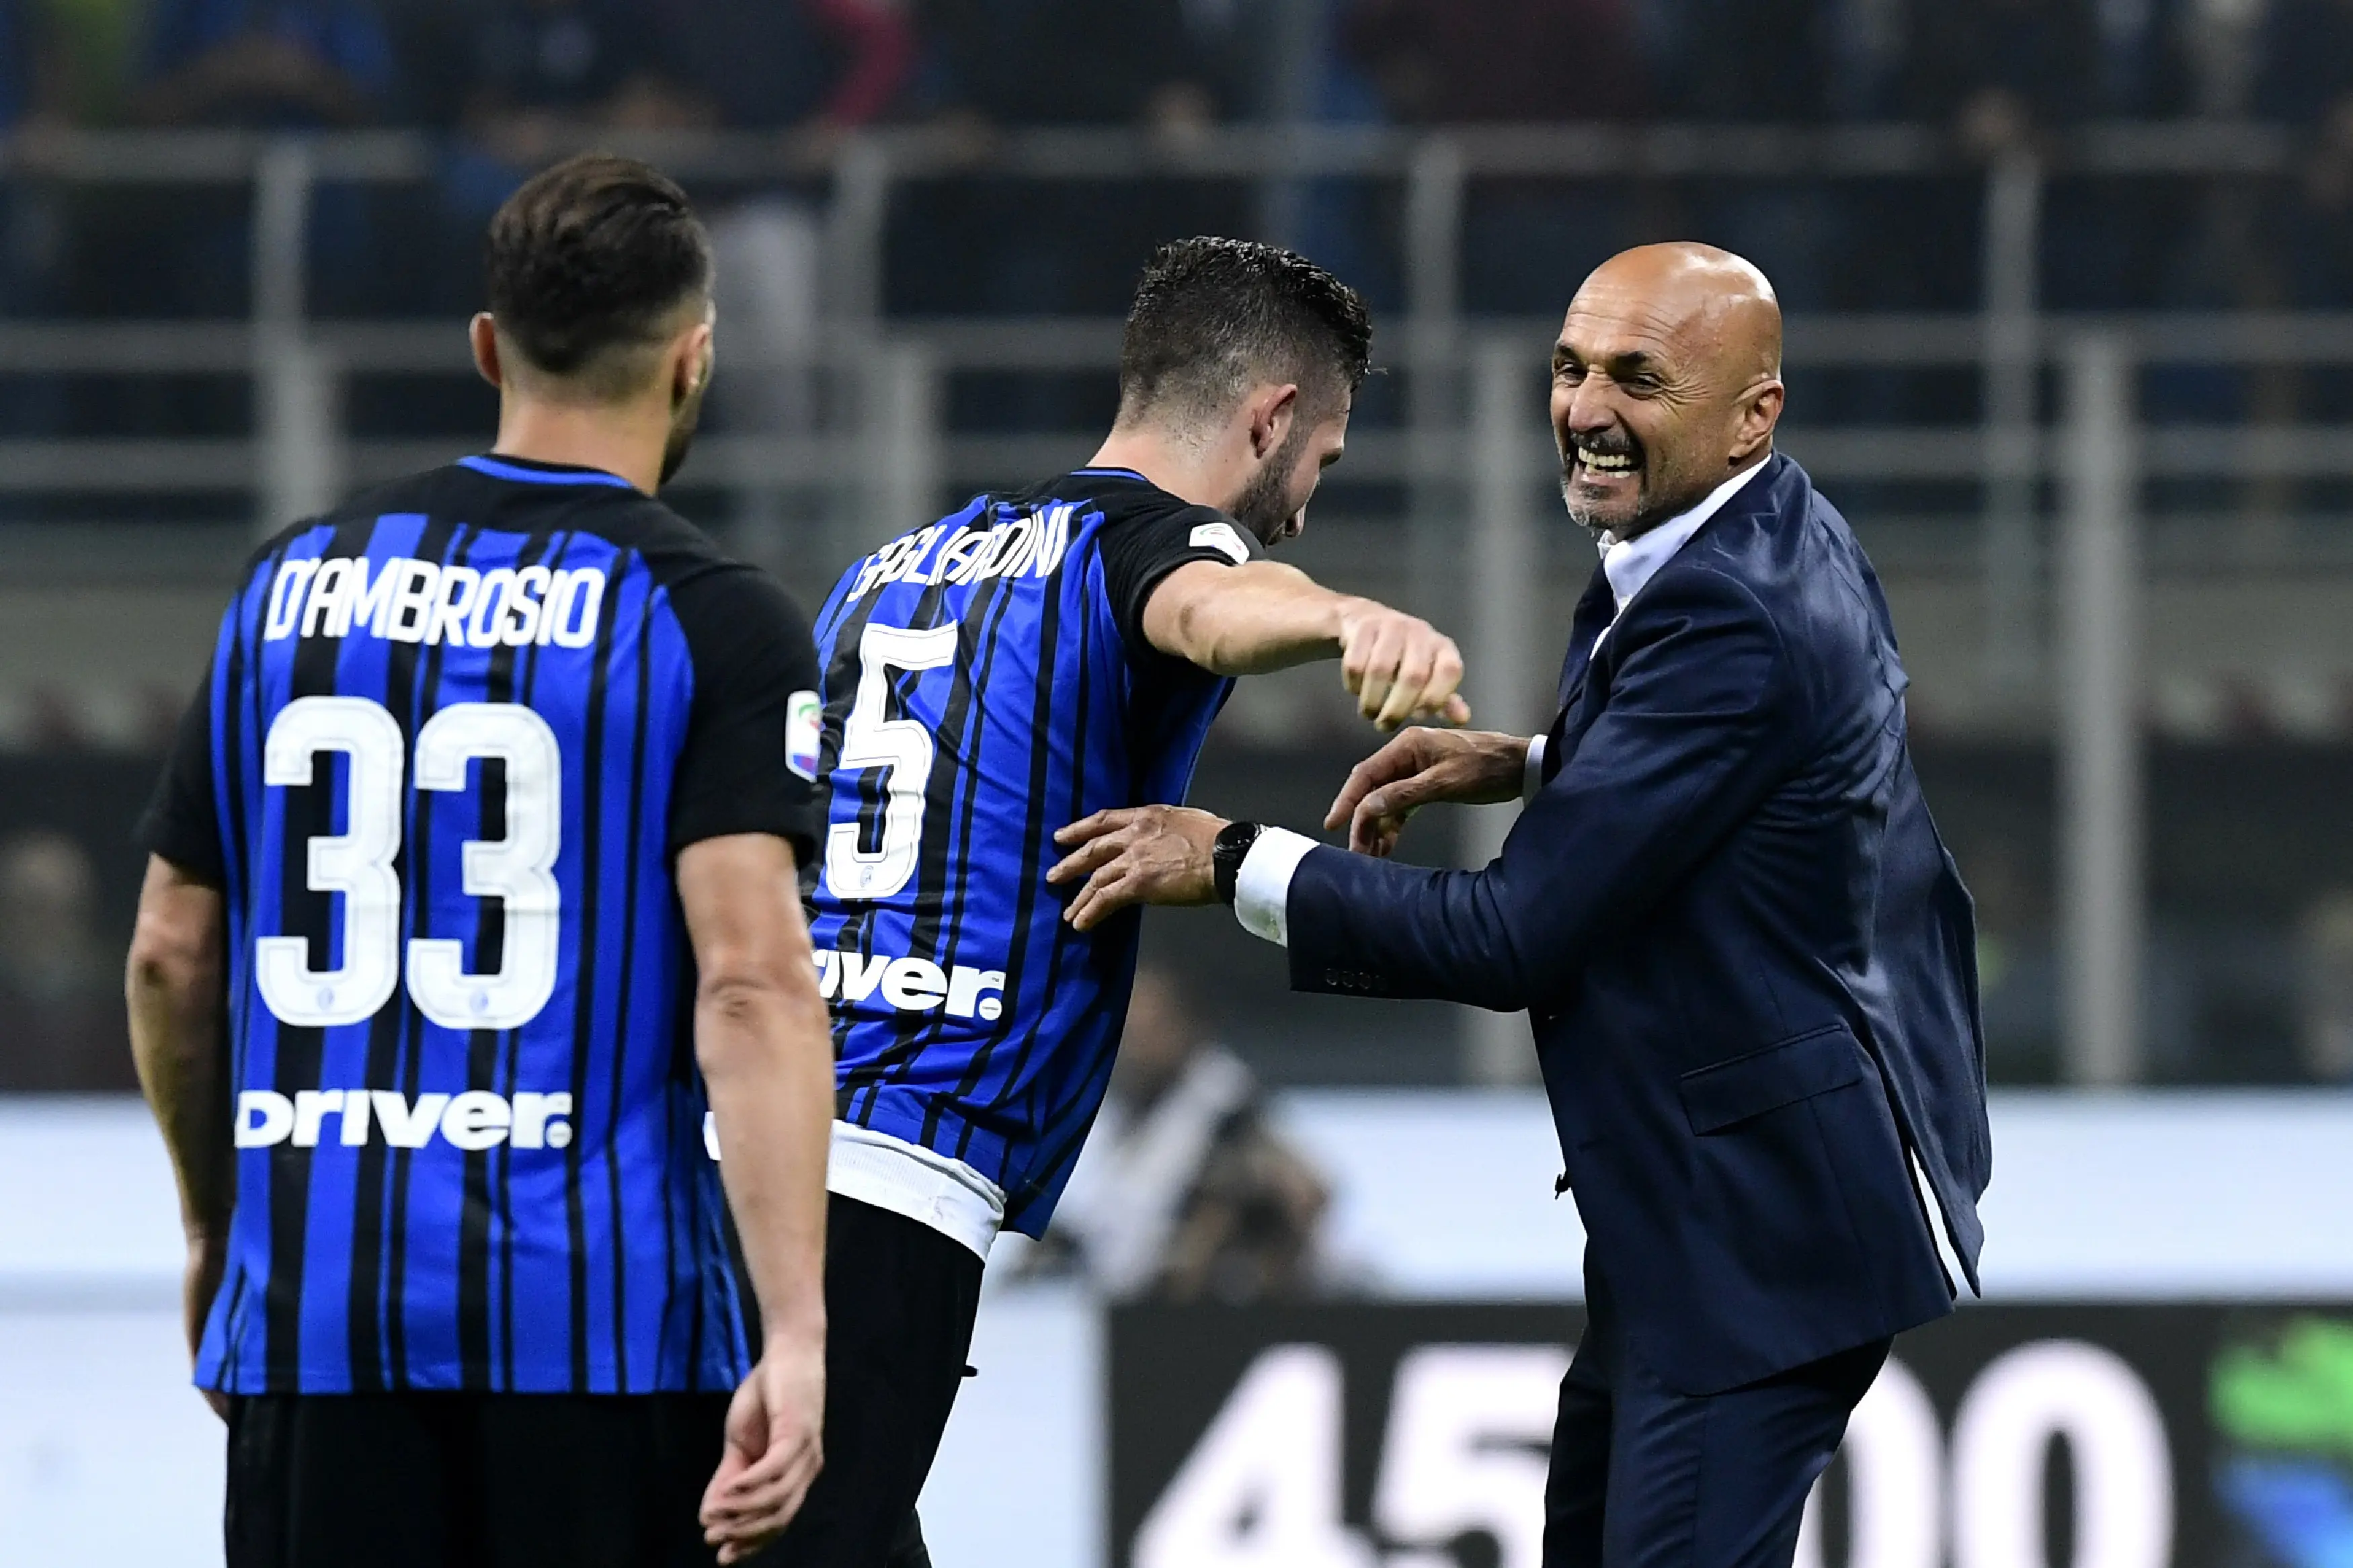 Luciano Spalletti ingin pemain Inter Milan tetap rendah hati pascakemenangan atas AC Milan. (AFP / MIGUEL MEDINA)